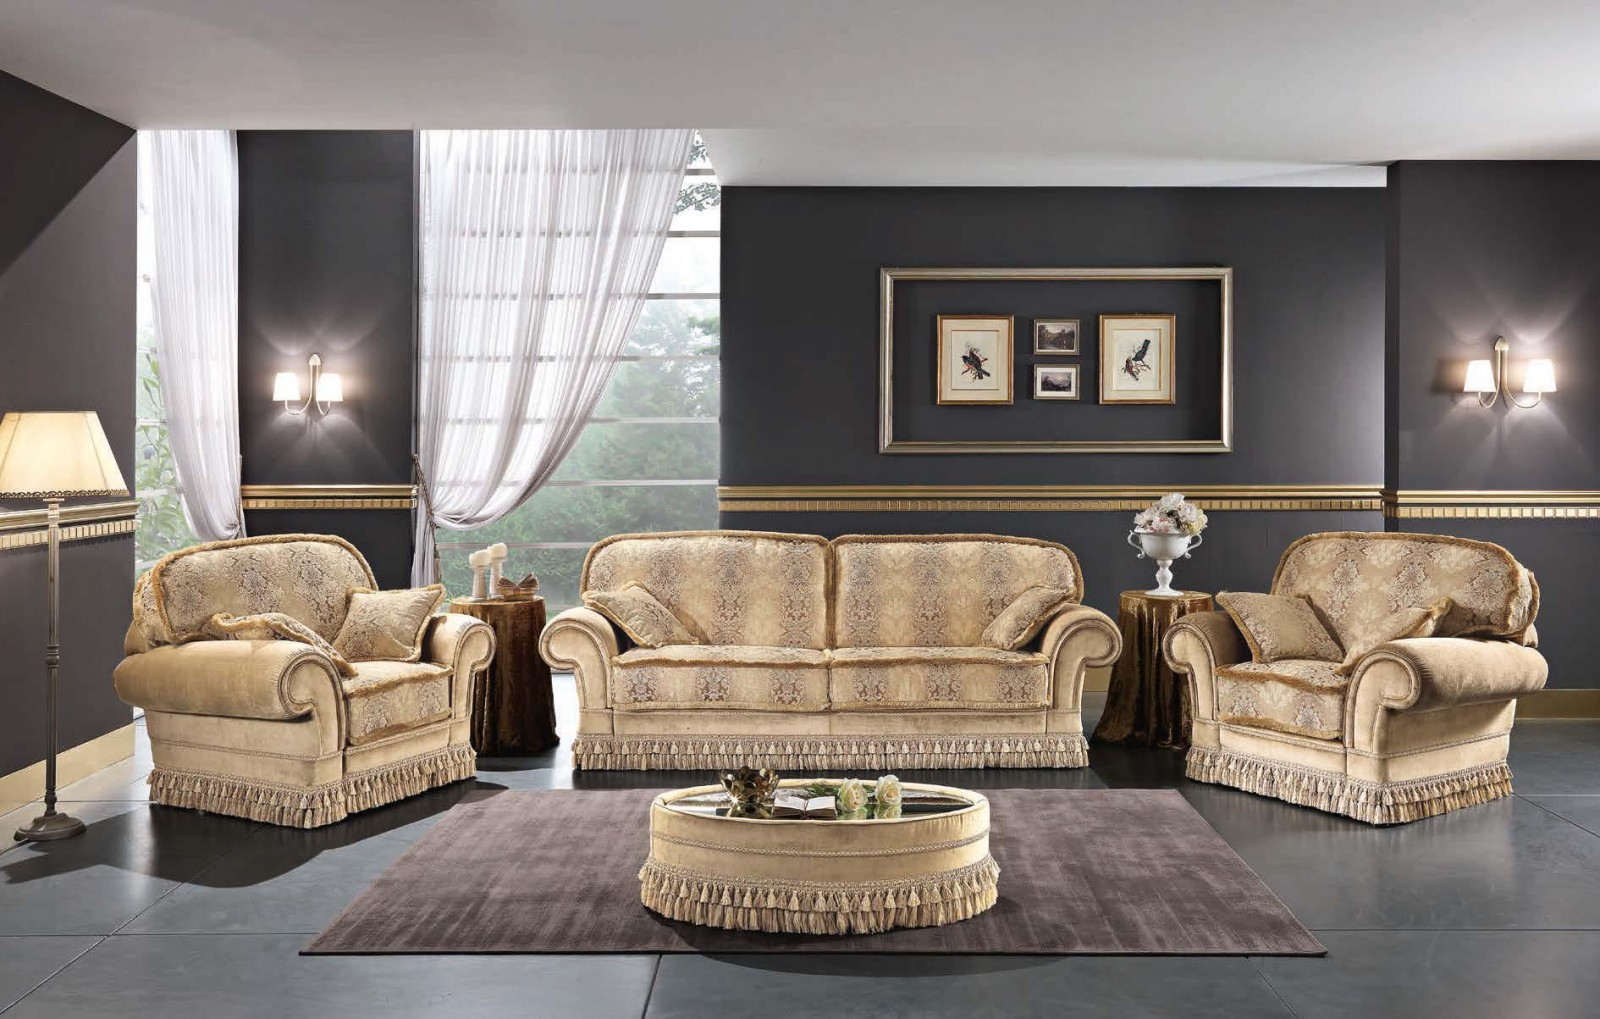 Мягкая мебель - esp/013. Бежевый диван и 2 кресла с подлокотниками-валикамии бахромой от фабрики Essepi